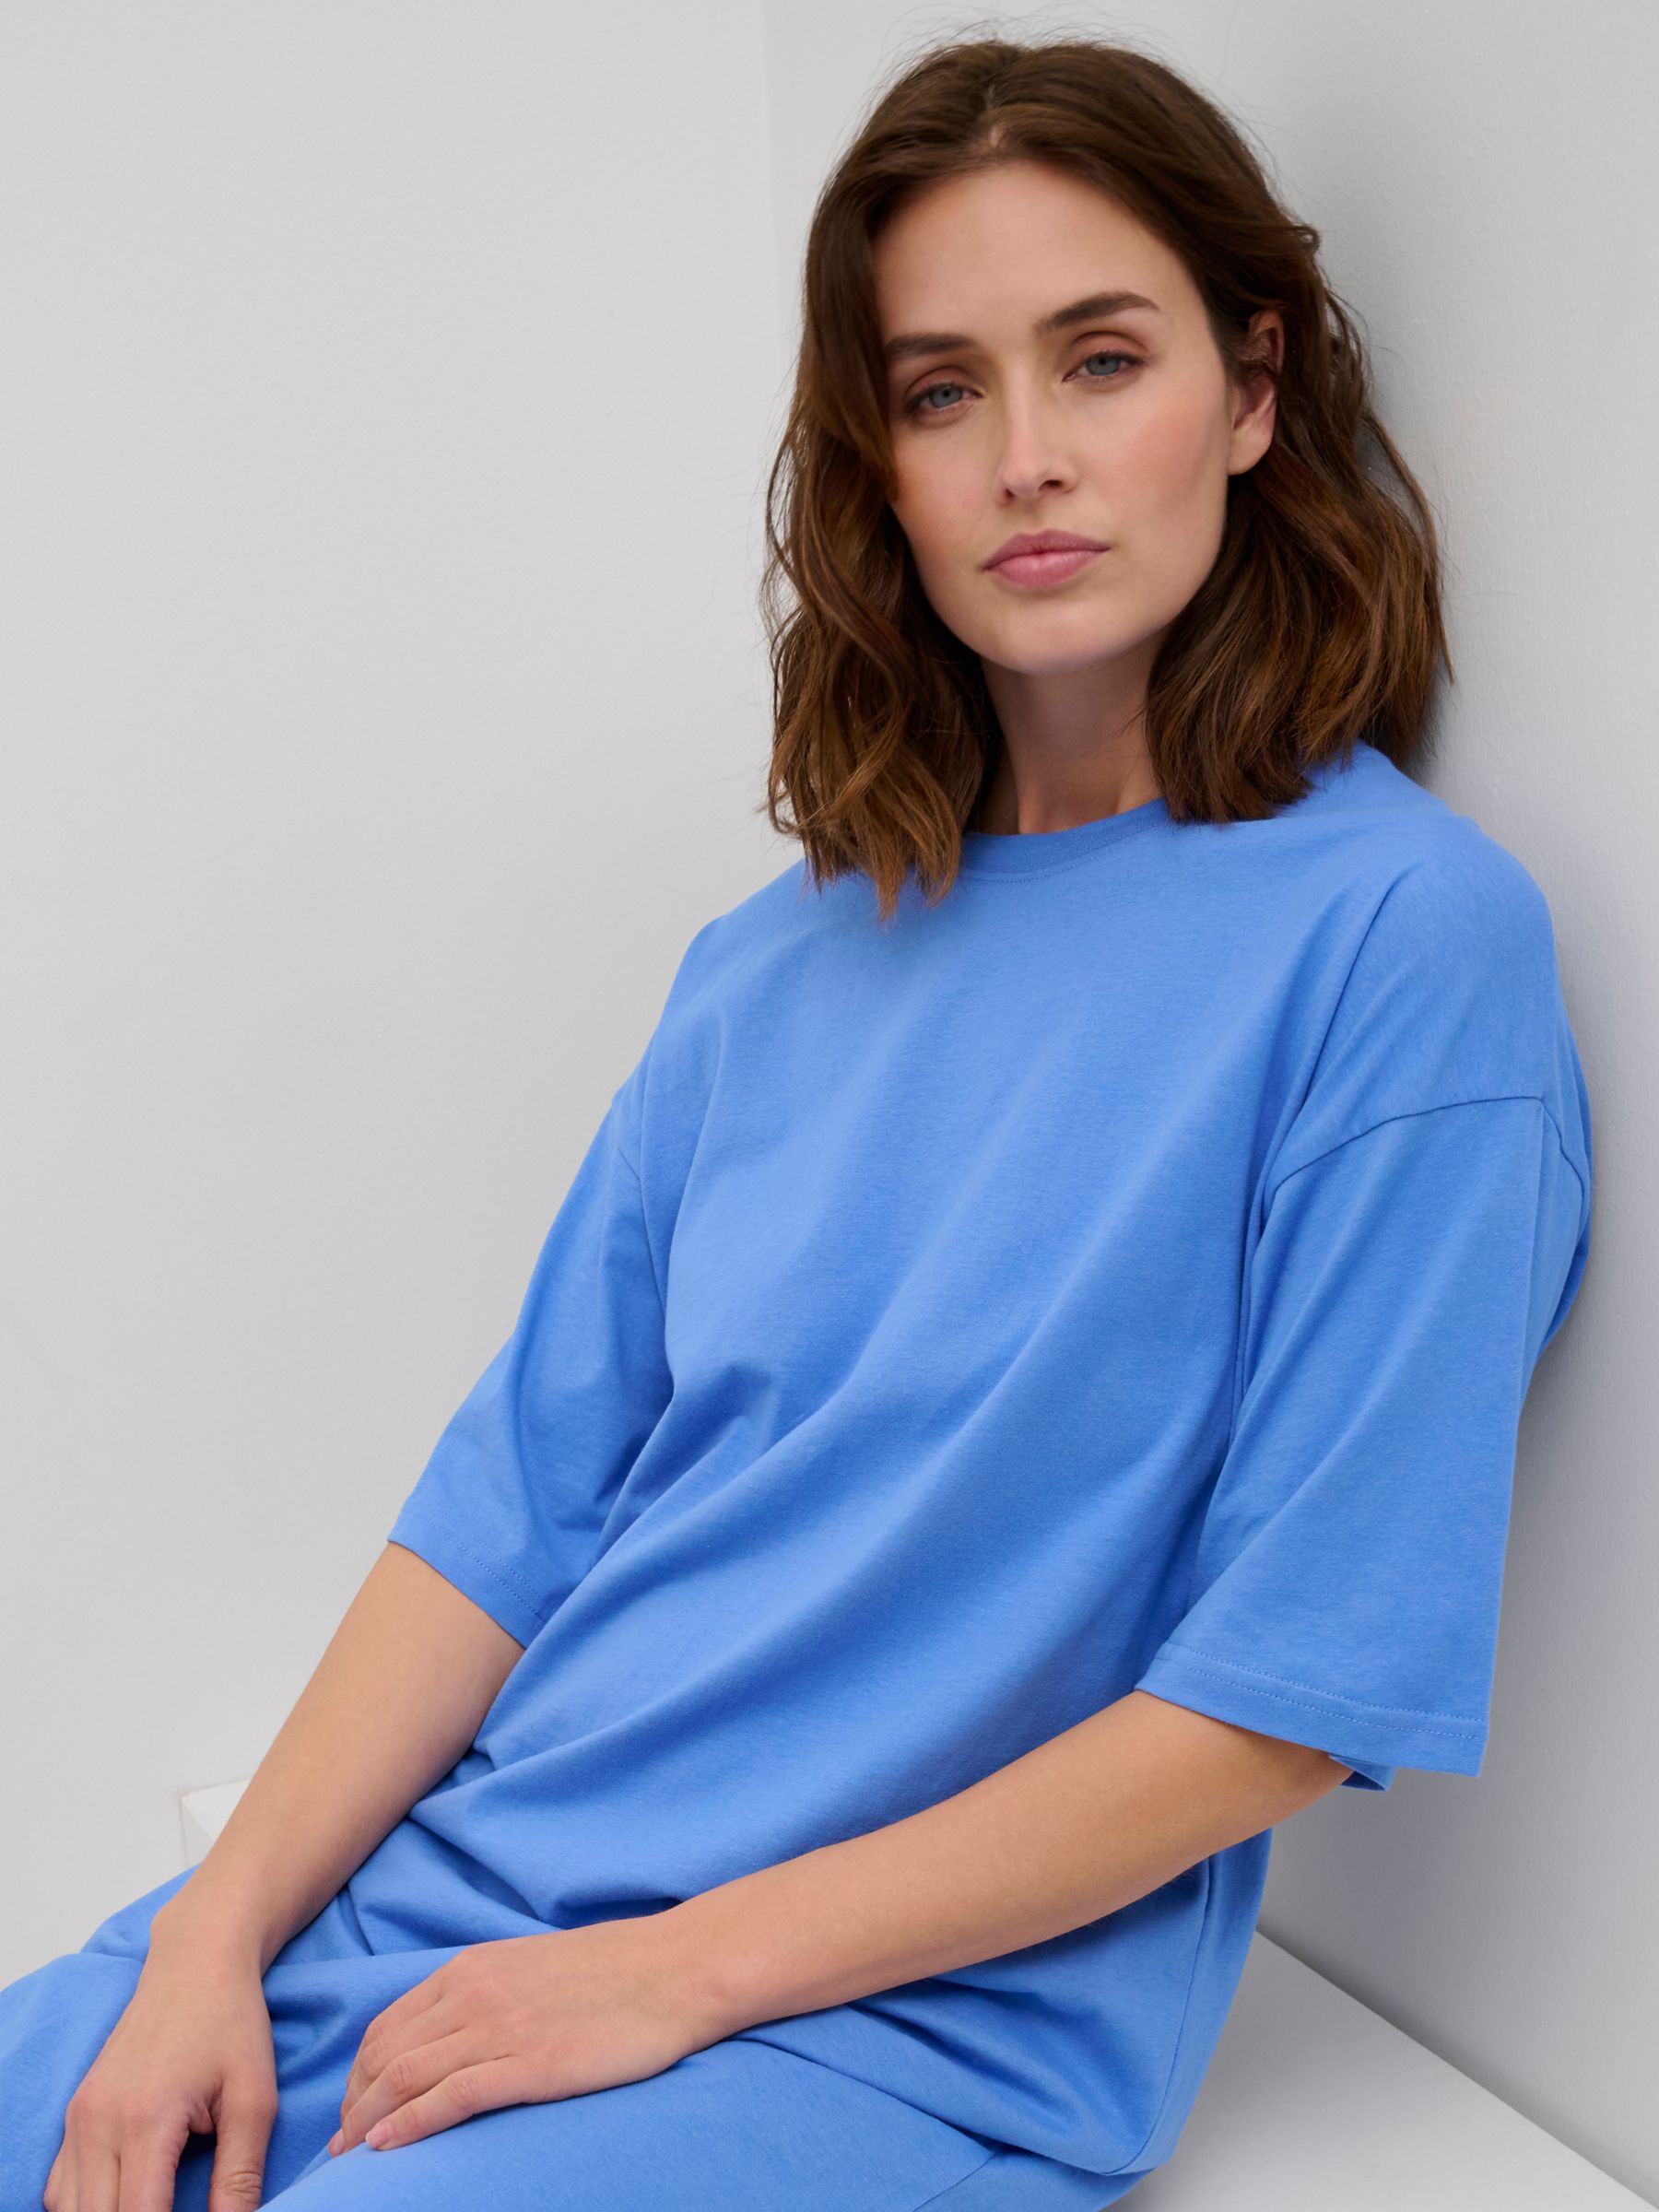 KAFFE Edna Casual Fit T-Shirt Midi Dress, Ultramarine, XS